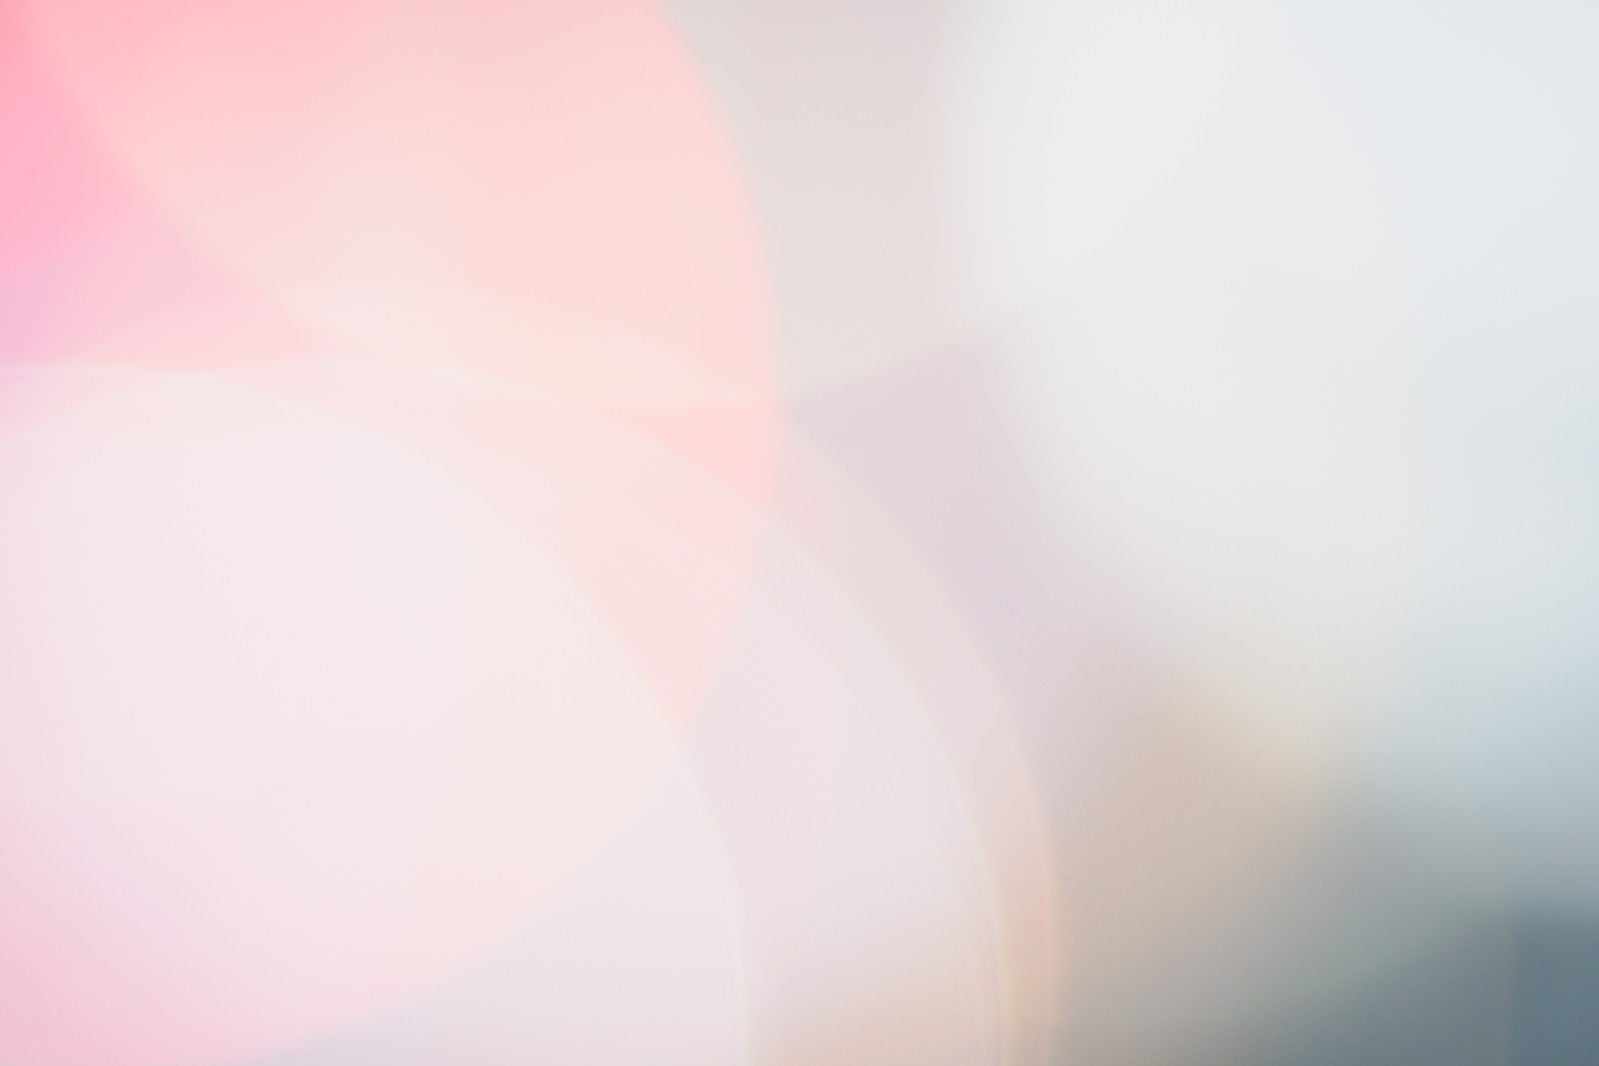 「連なるピンク色のネオン」の写真